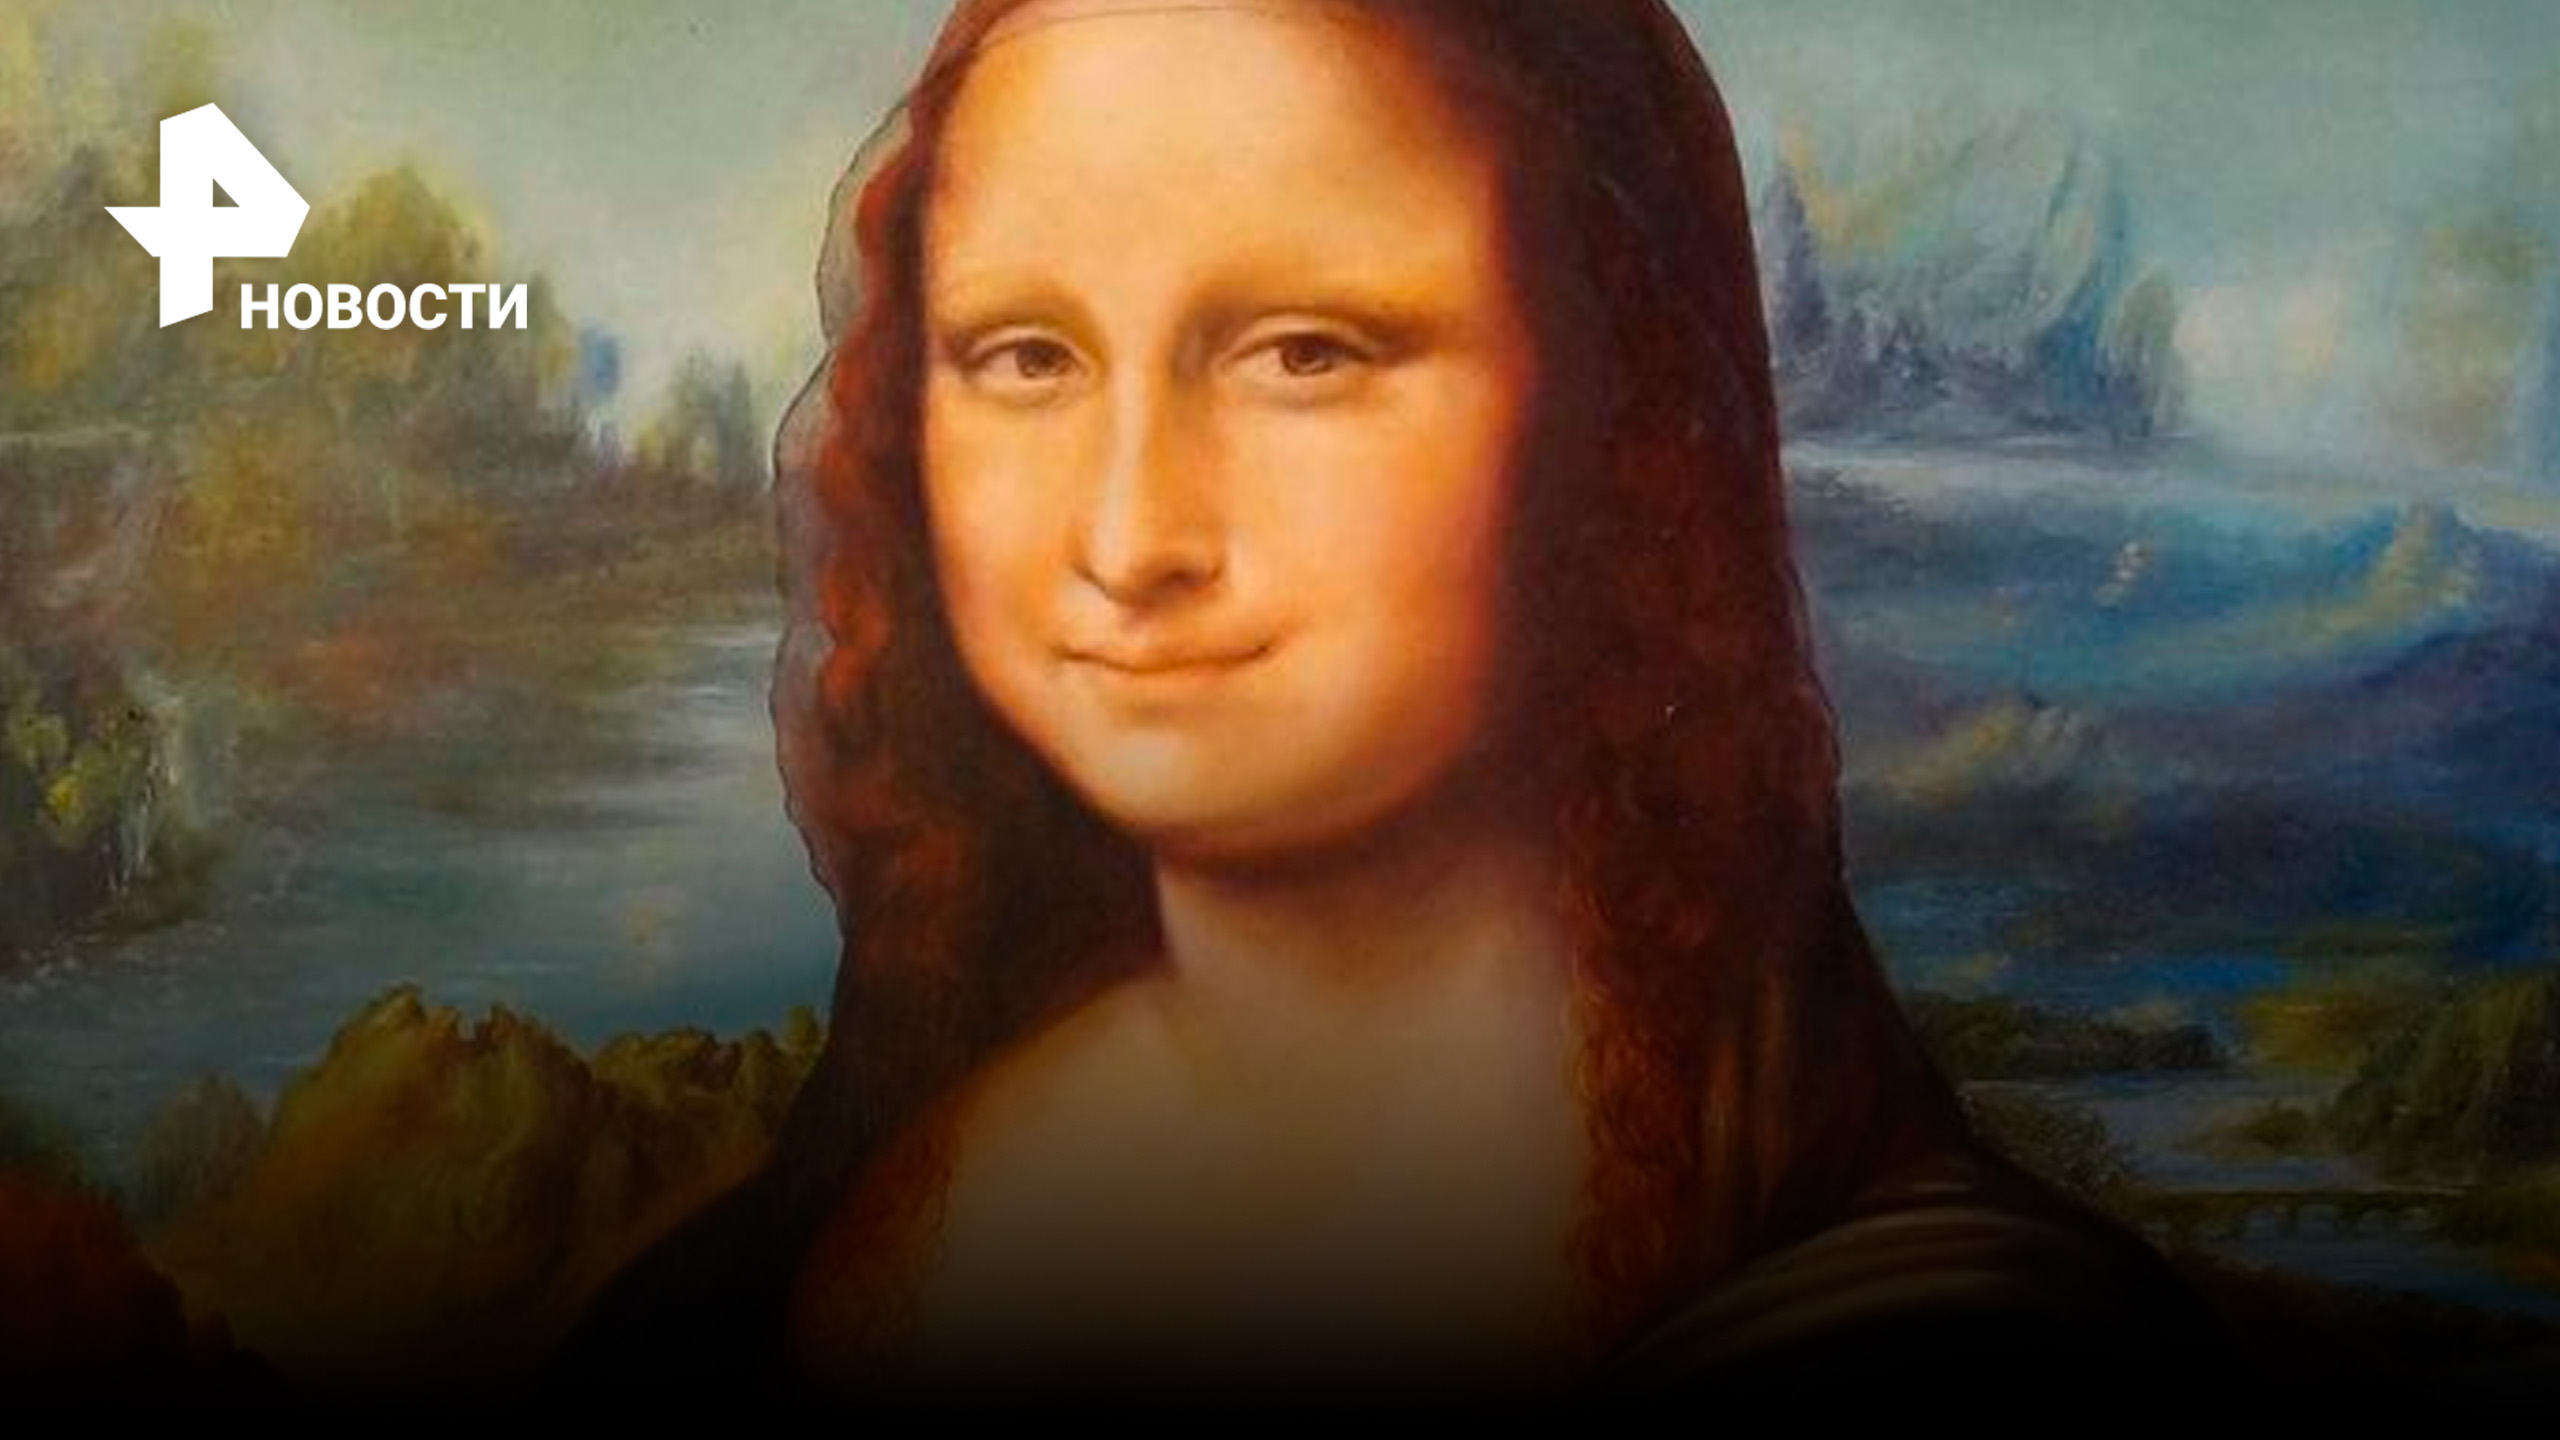 Моно. Леонардо да Винчи "Мона Лиза". Портрет Мона Лиза Леонардо да Винчи. Леонардодавиньчи Монн Лиза. Портрет Джоконды Леонардо да Винчи.